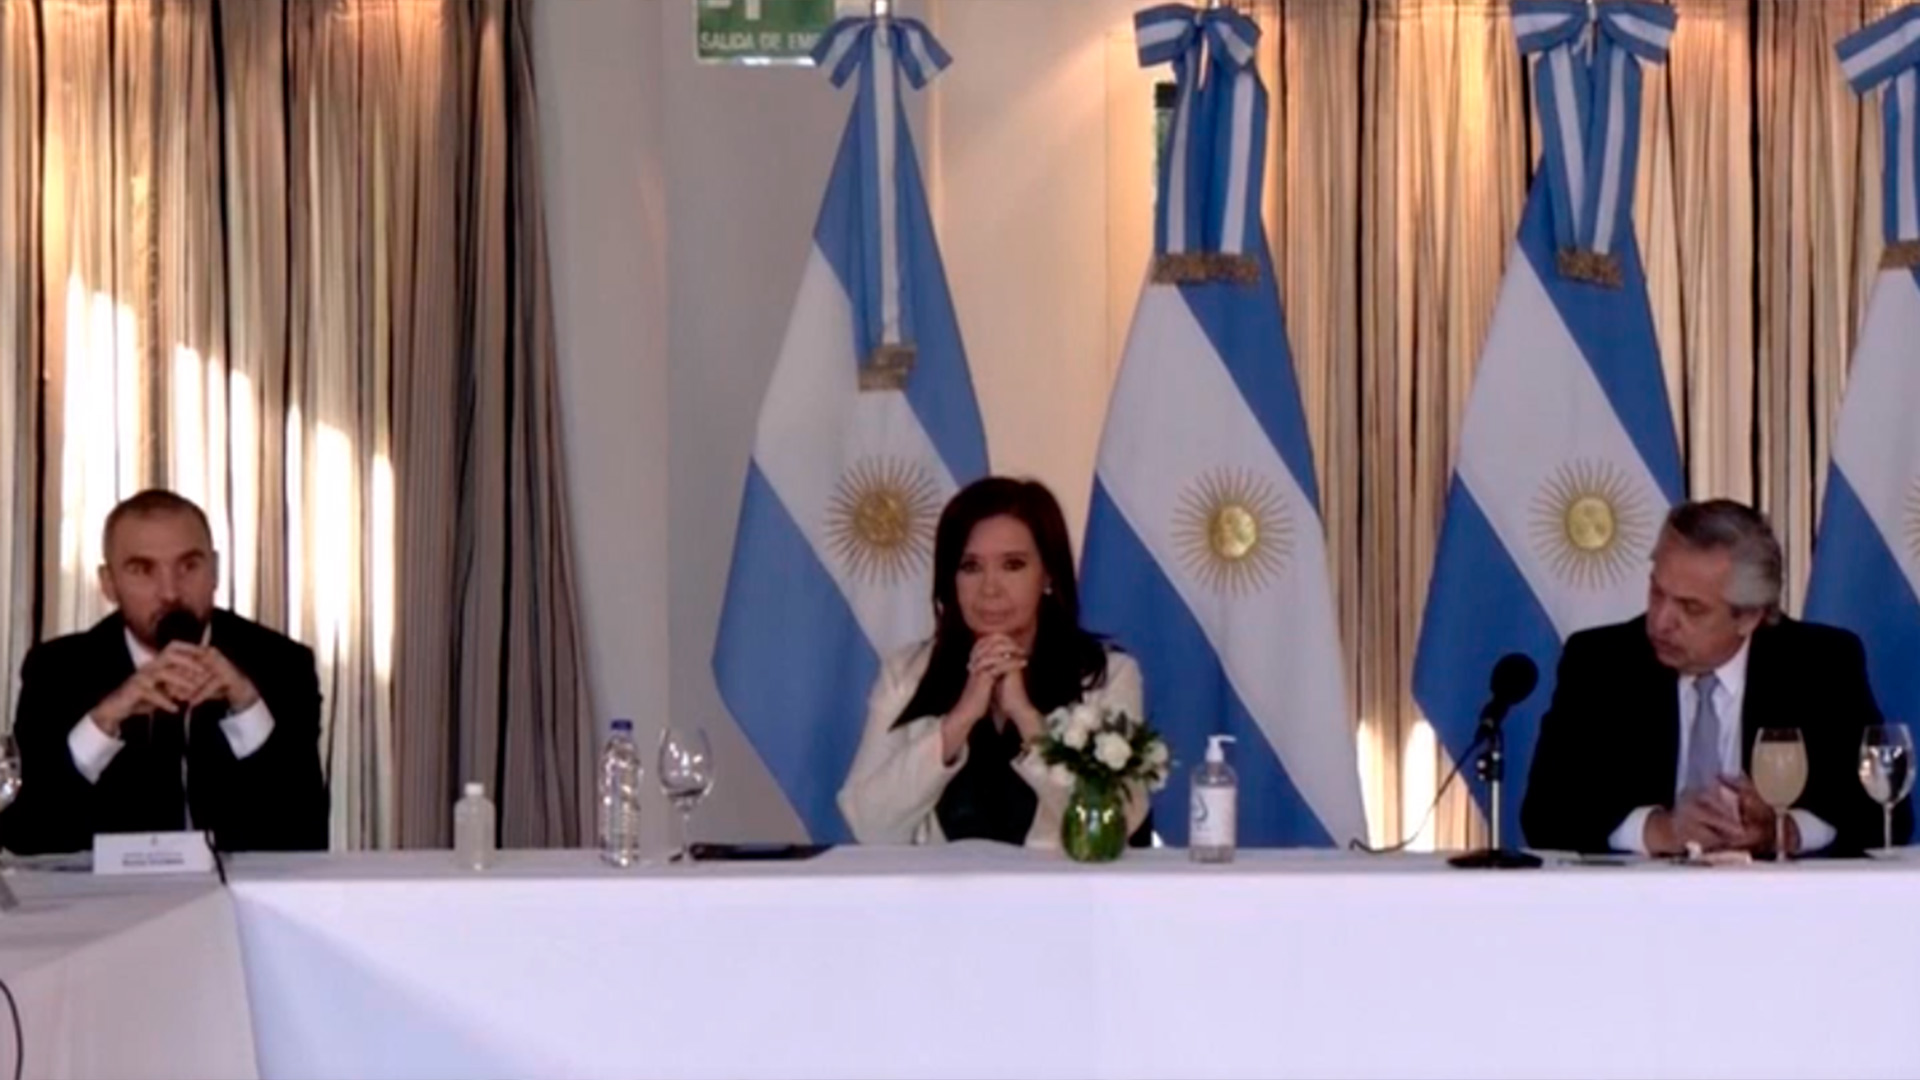 En Economía afirman que la vicepresidenta Cristina Kirchner no se opone a llegar a un acuerdo con los bonistas